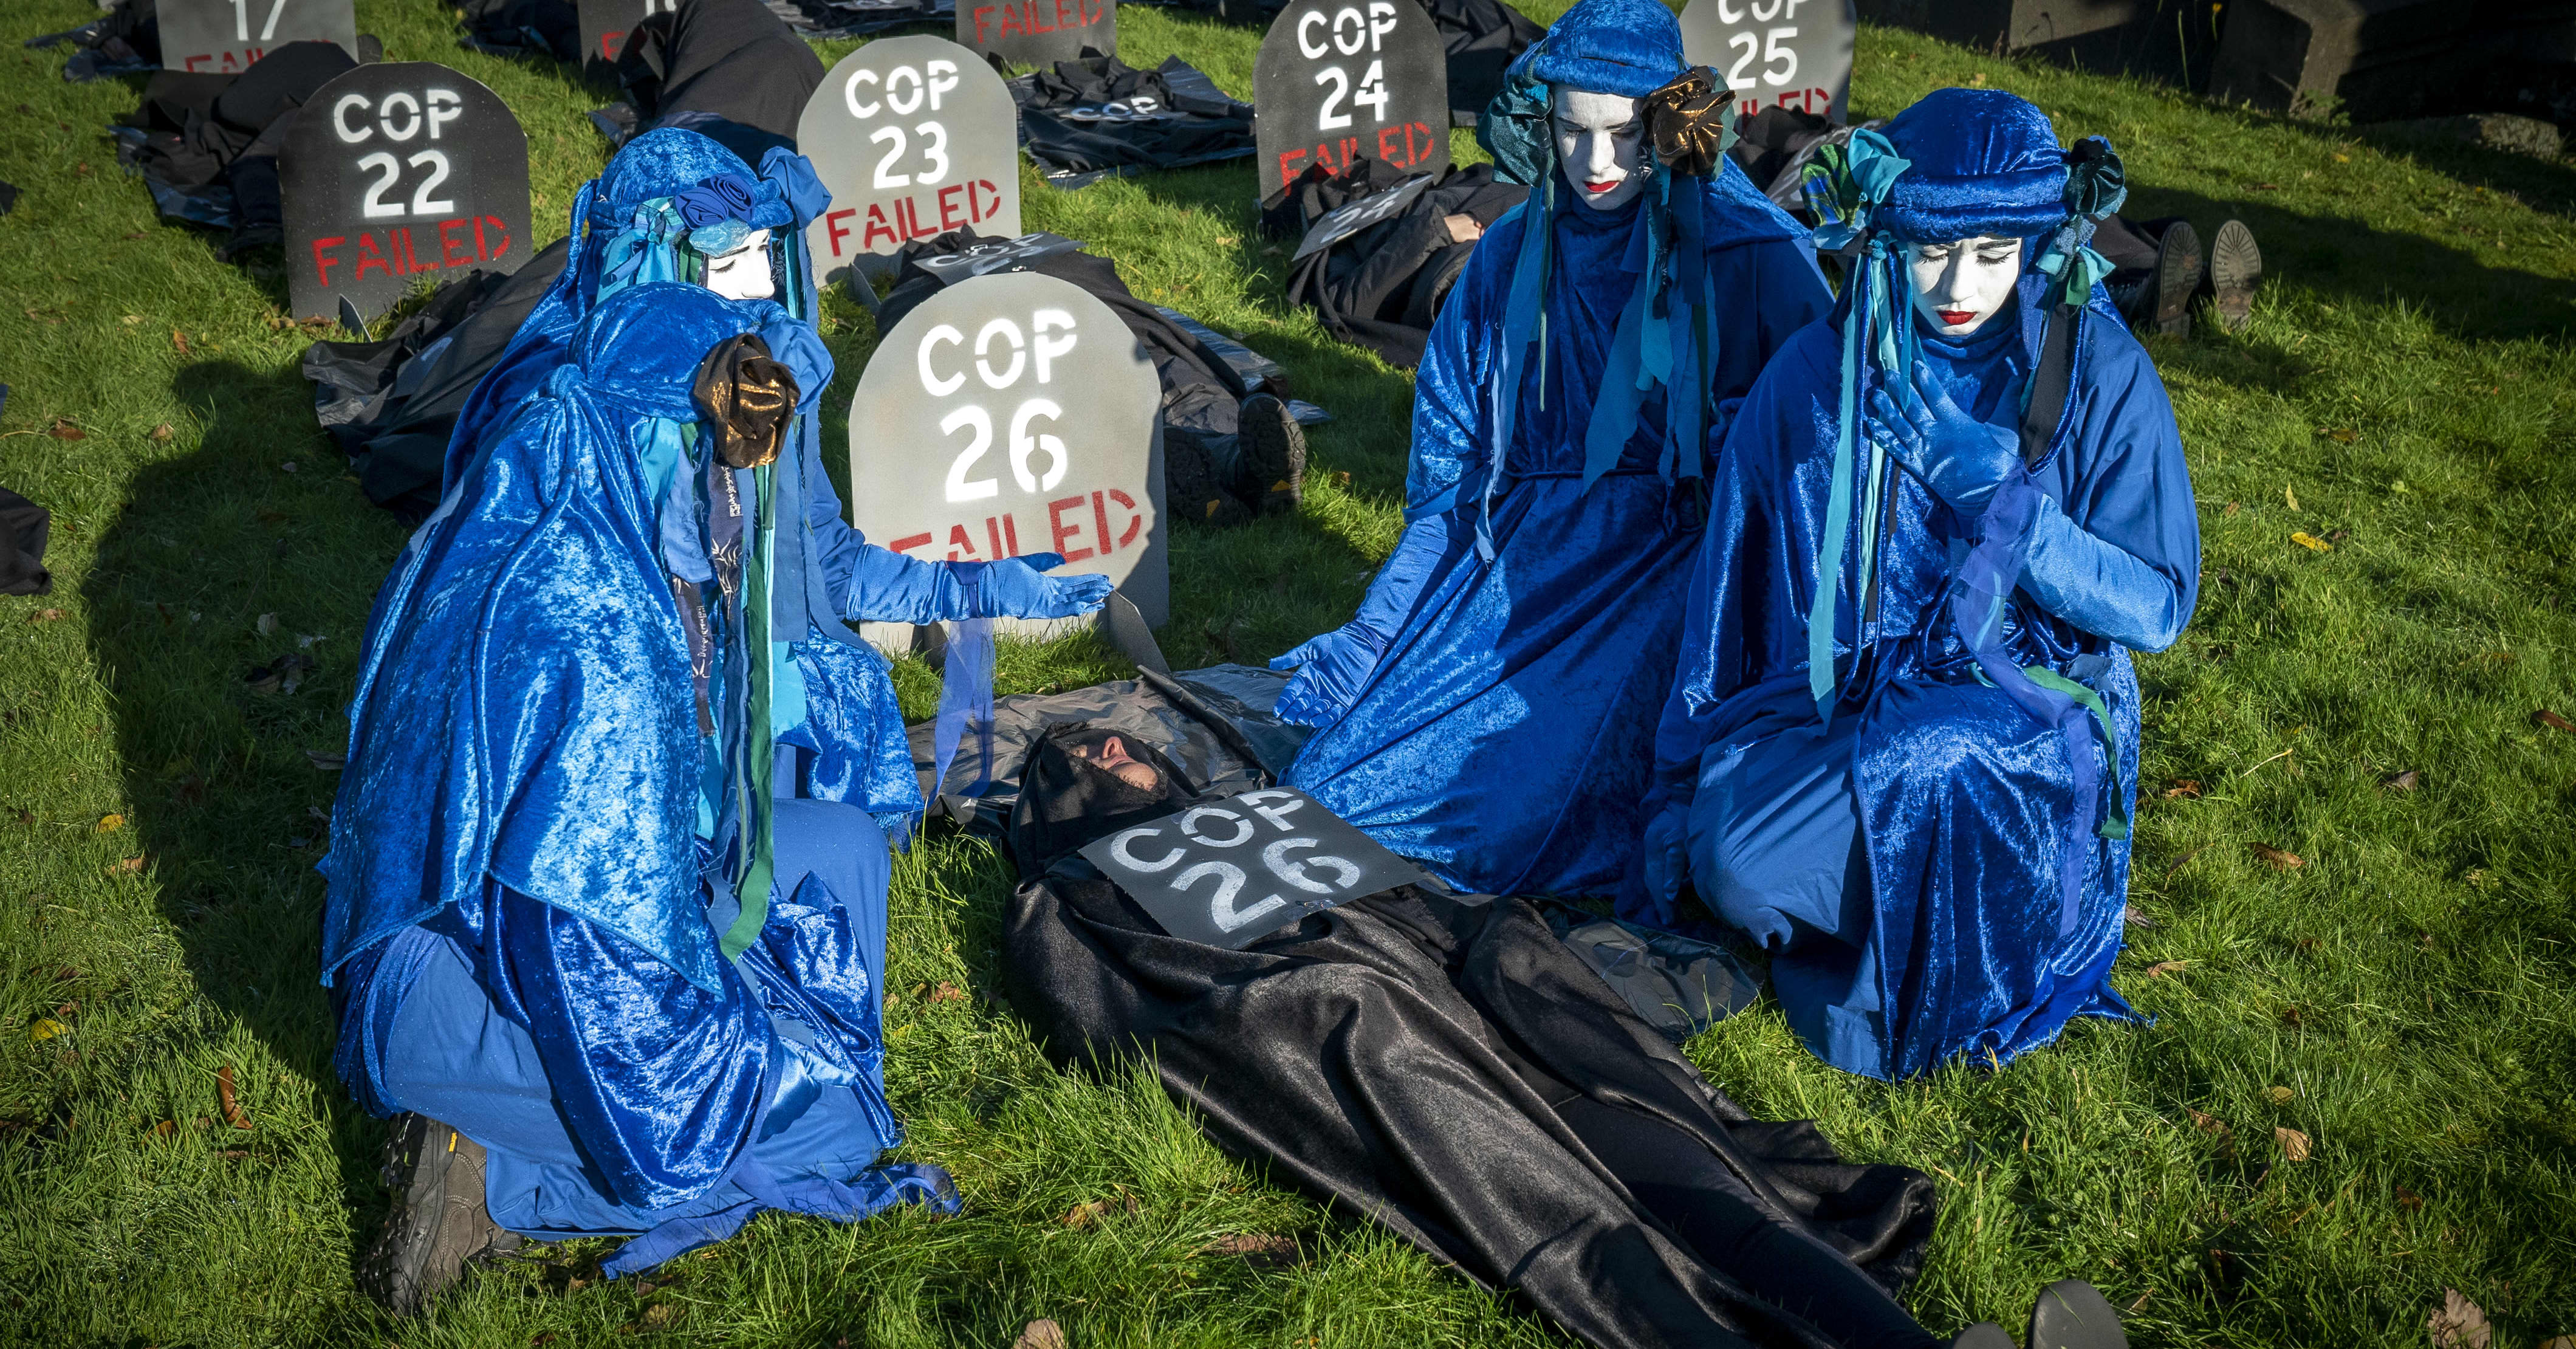 Analyysi: Blaa blaa blaa ei pelasta maailmaa mutta ilmastokokouksia ei kannata haudata elävältä